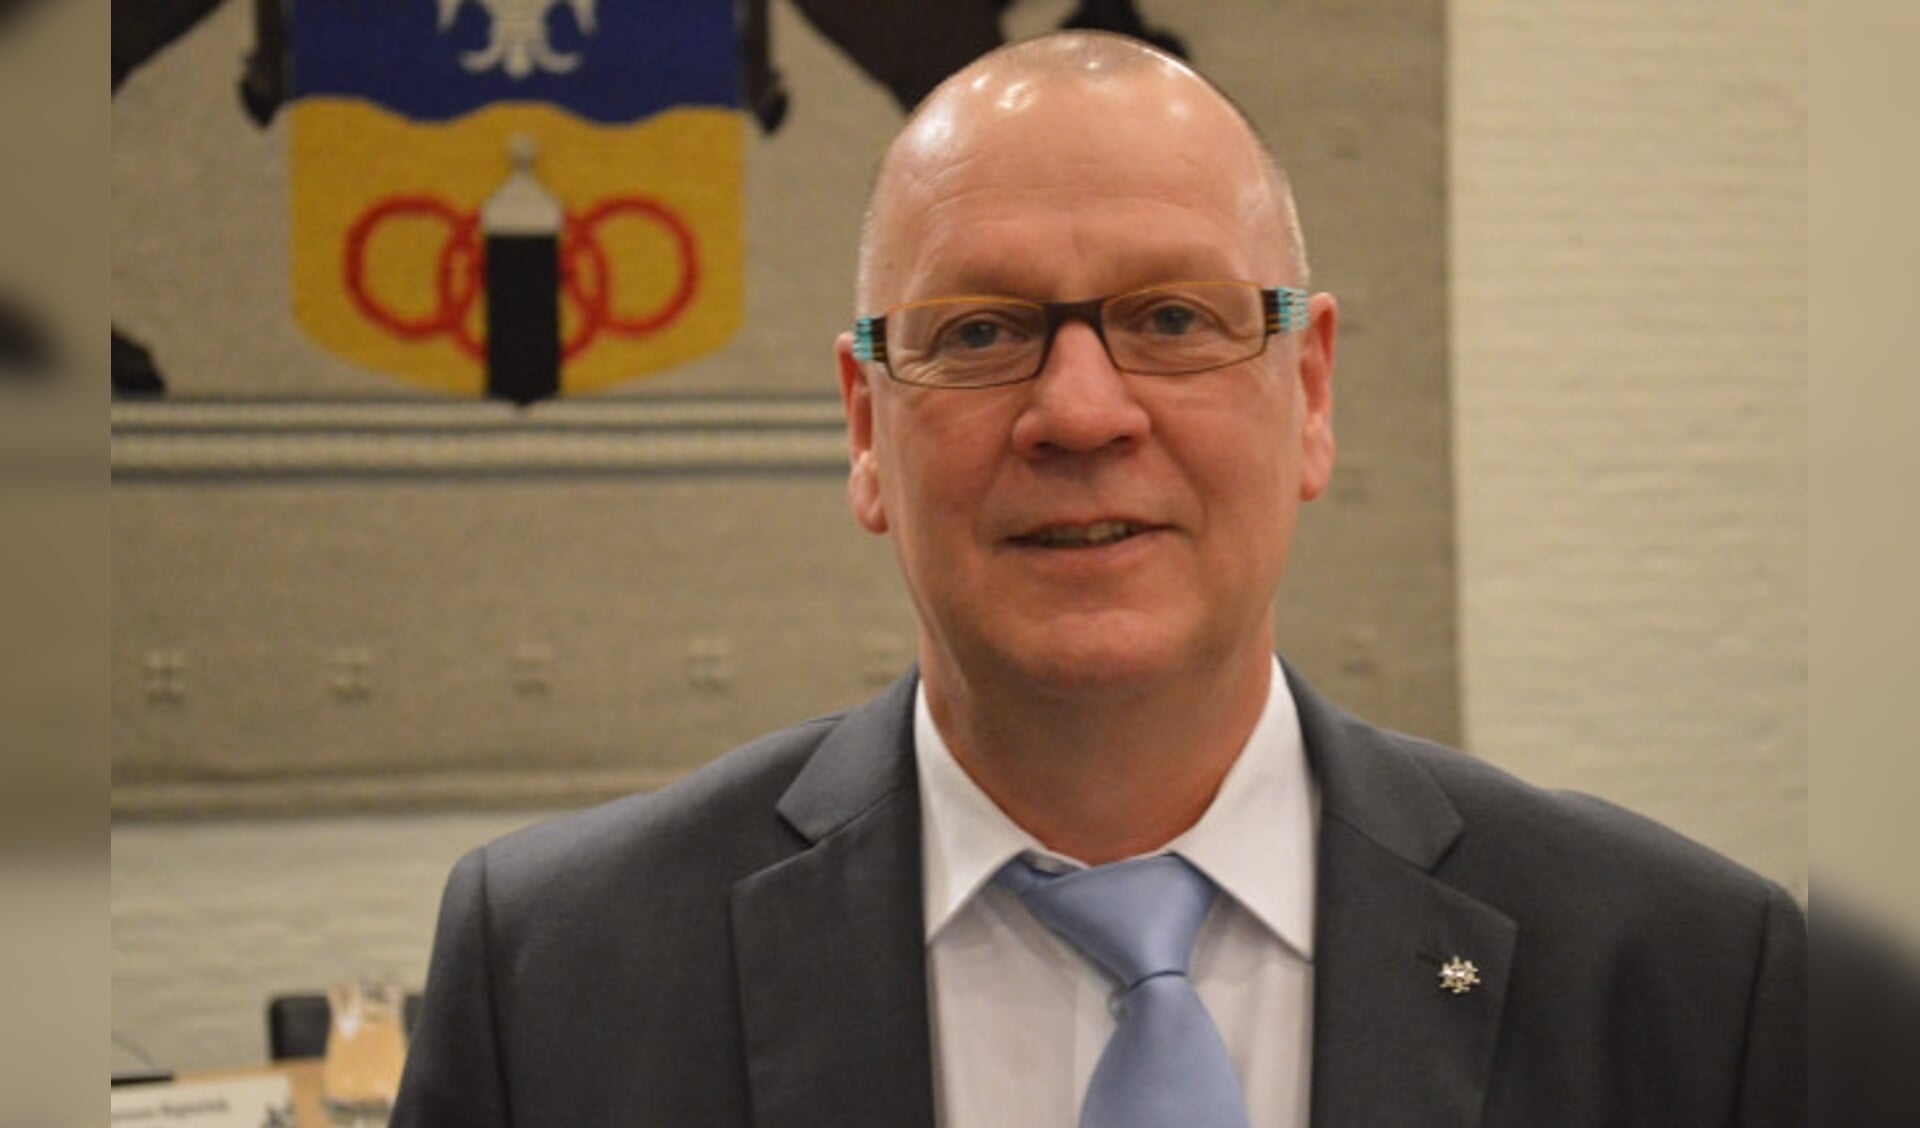  Jan Klopman (CDA)